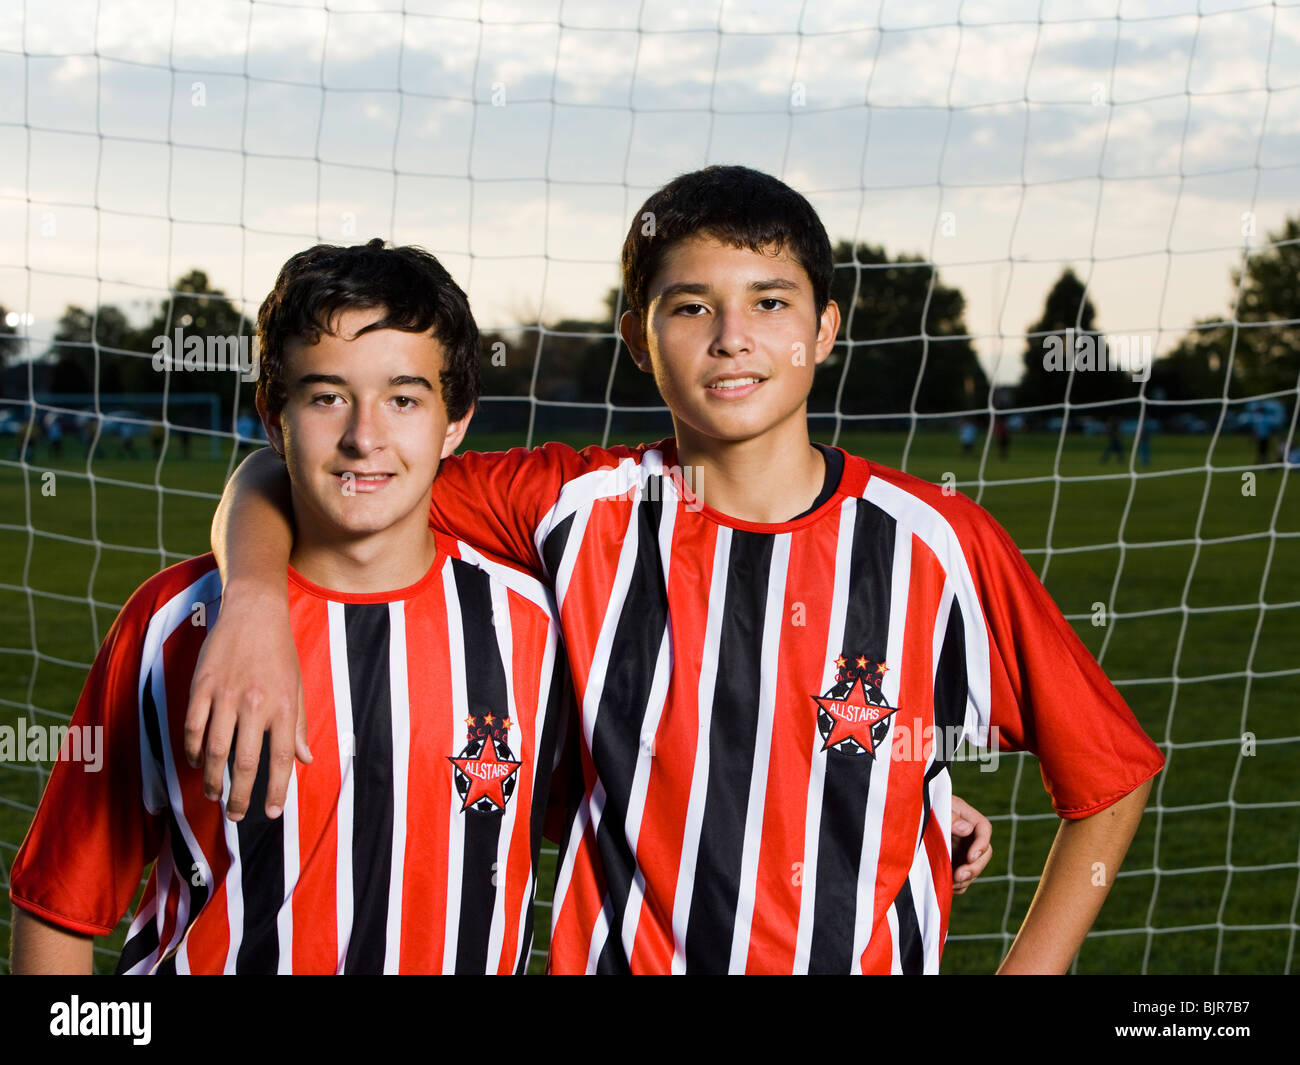 Jeunes joueurs de soccer Banque D'Images